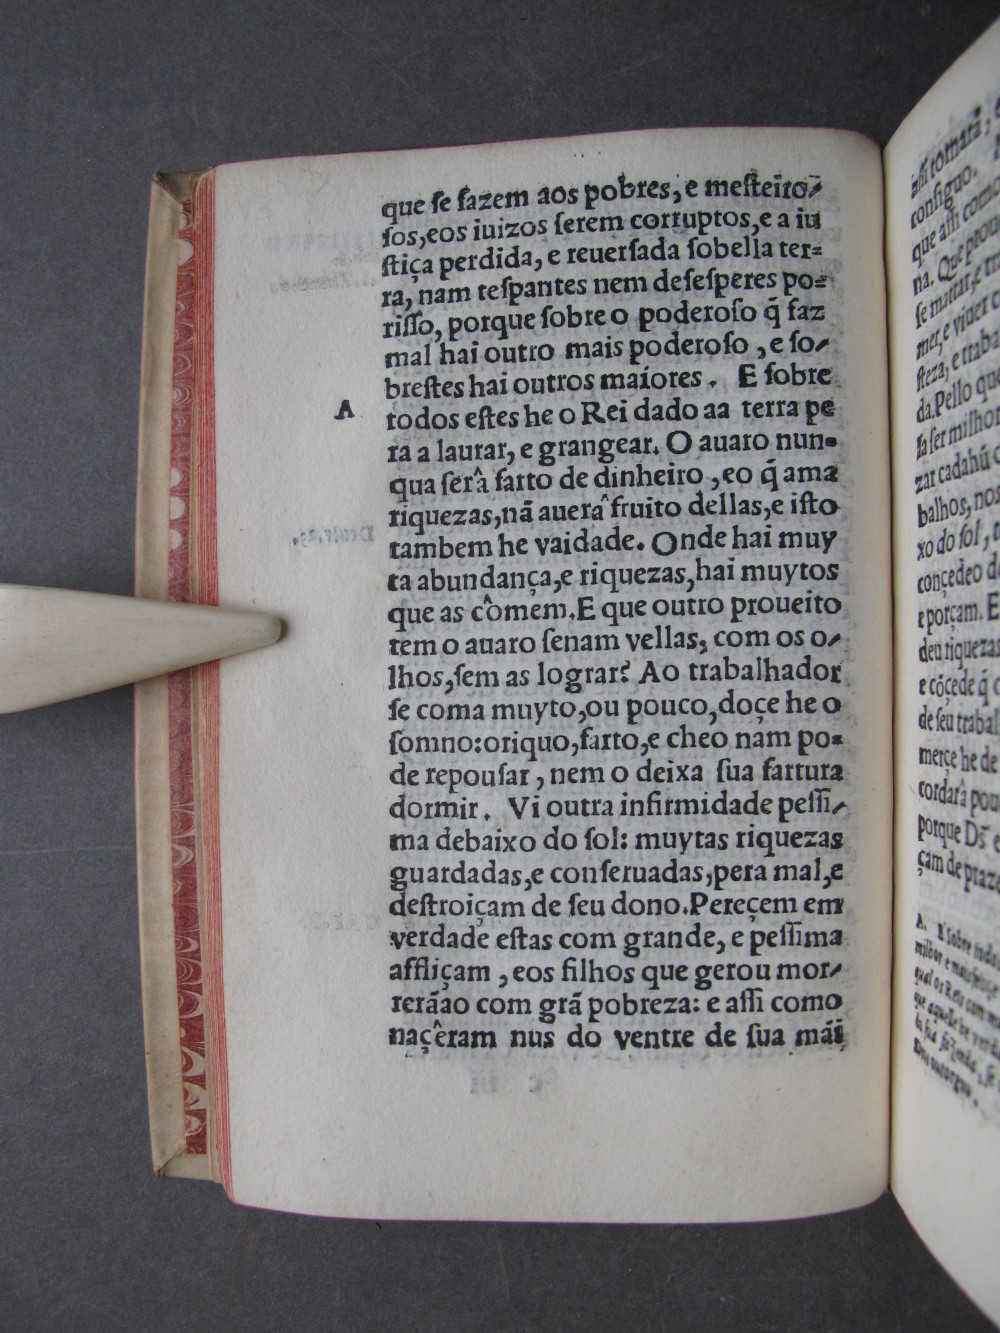 Folio c3 verso